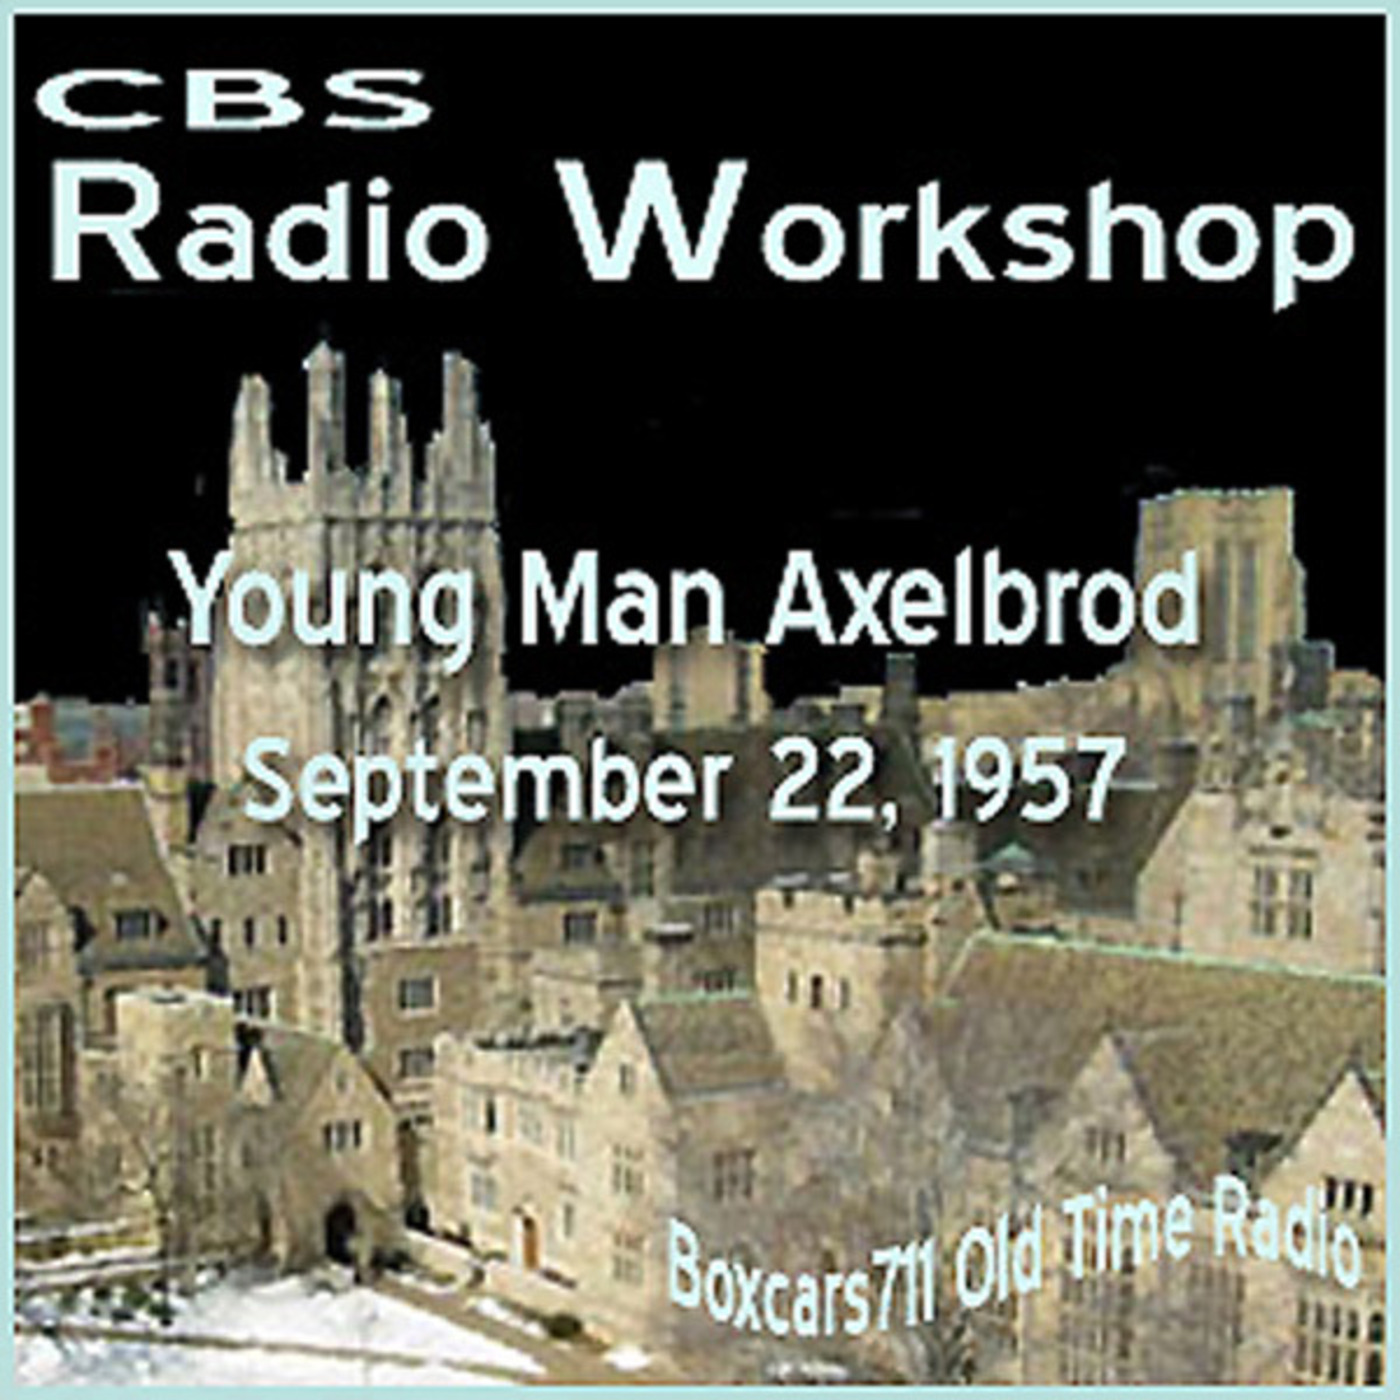 Episode 9614: The CBS Radio Workshop -